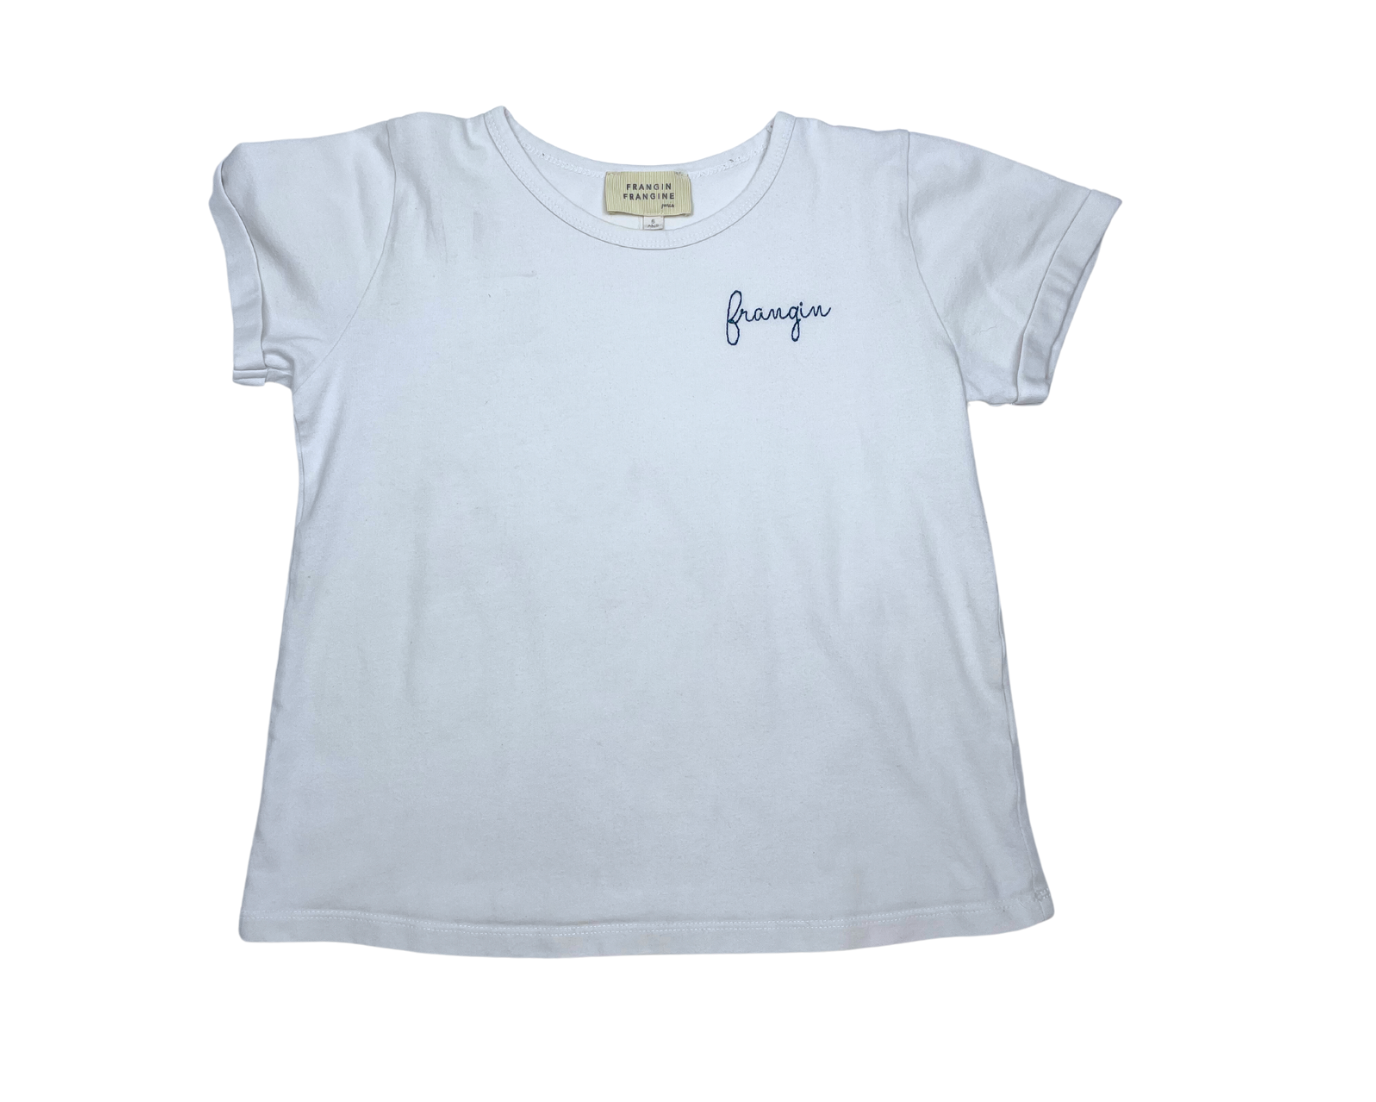 FRANGIN FRANGINE - T-shirt "frangin" - 6 ans